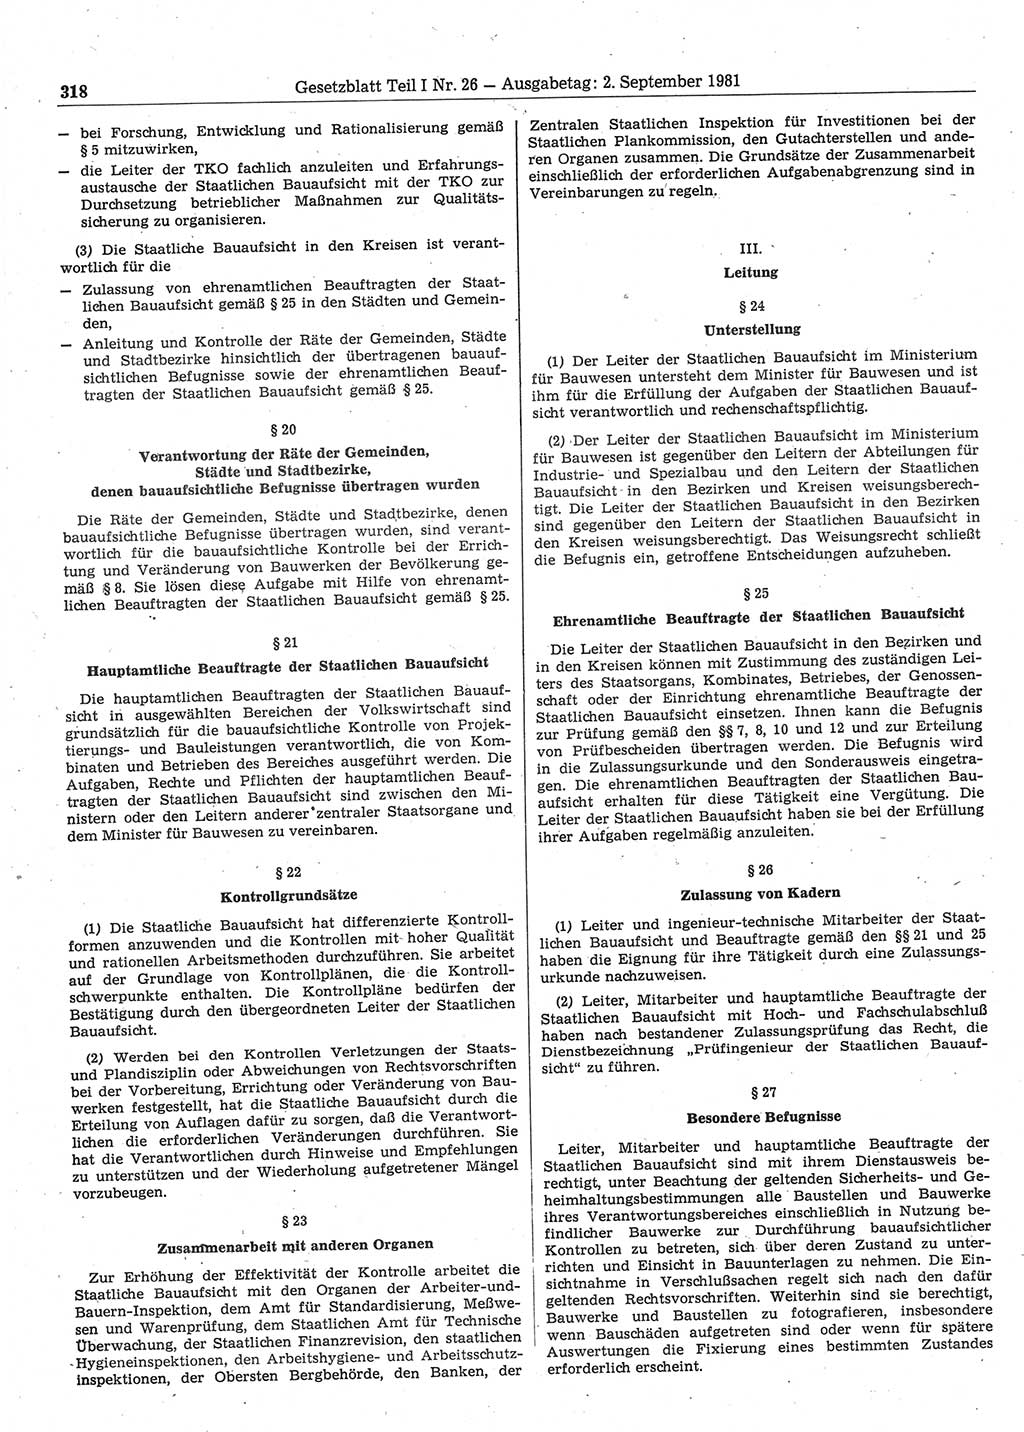 Gesetzblatt (GBl.) der Deutschen Demokratischen Republik (DDR) Teil Ⅰ 1981, Seite 318 (GBl. DDR Ⅰ 1981, S. 318)